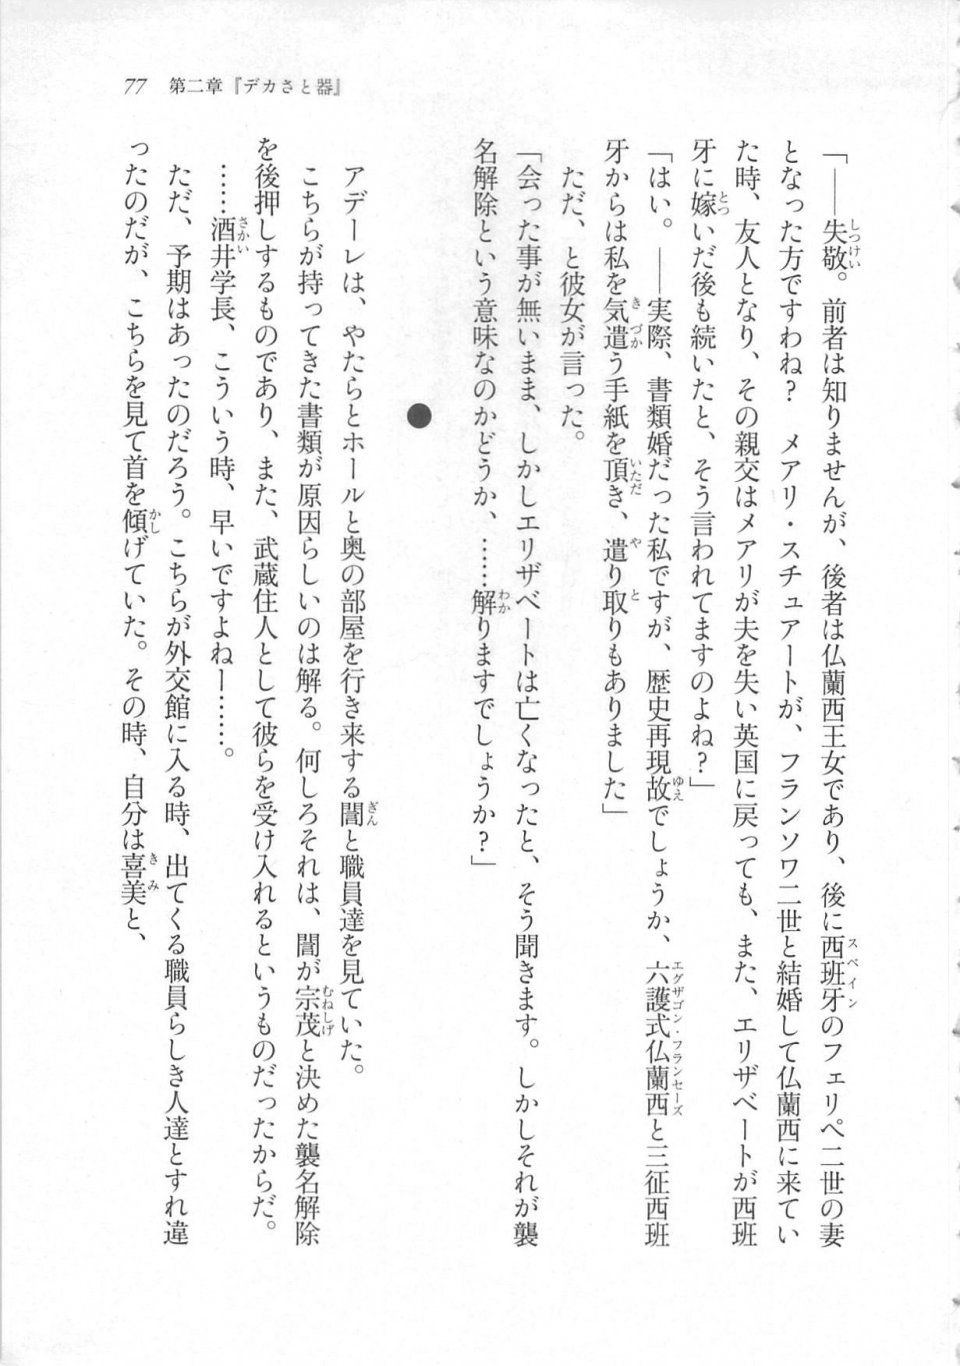 Kyoukai Senjou no Horizon LN Sidestory Vol 3 - Photo #81